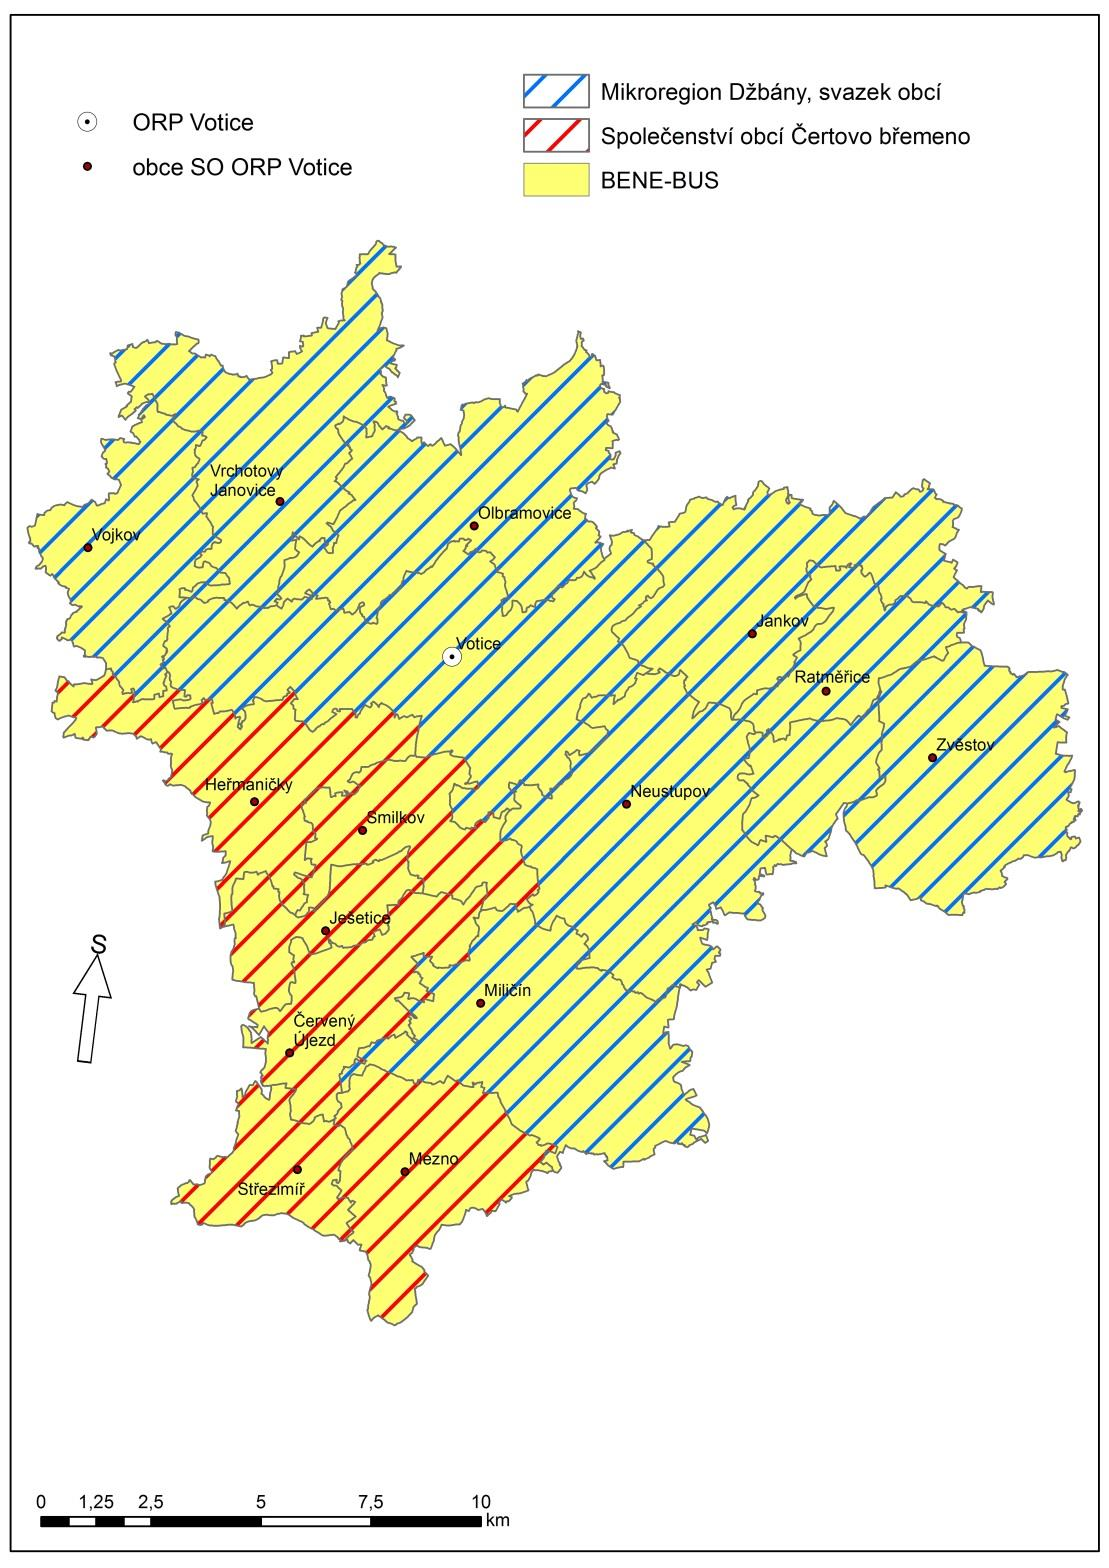 2 Souhrnná zpráva za všechny DSO v území Ve správním obvodu ORP Votice působí 3 dobrovolné svazky obcí (Mikroregion Džbány, svazek obcí; Společenství